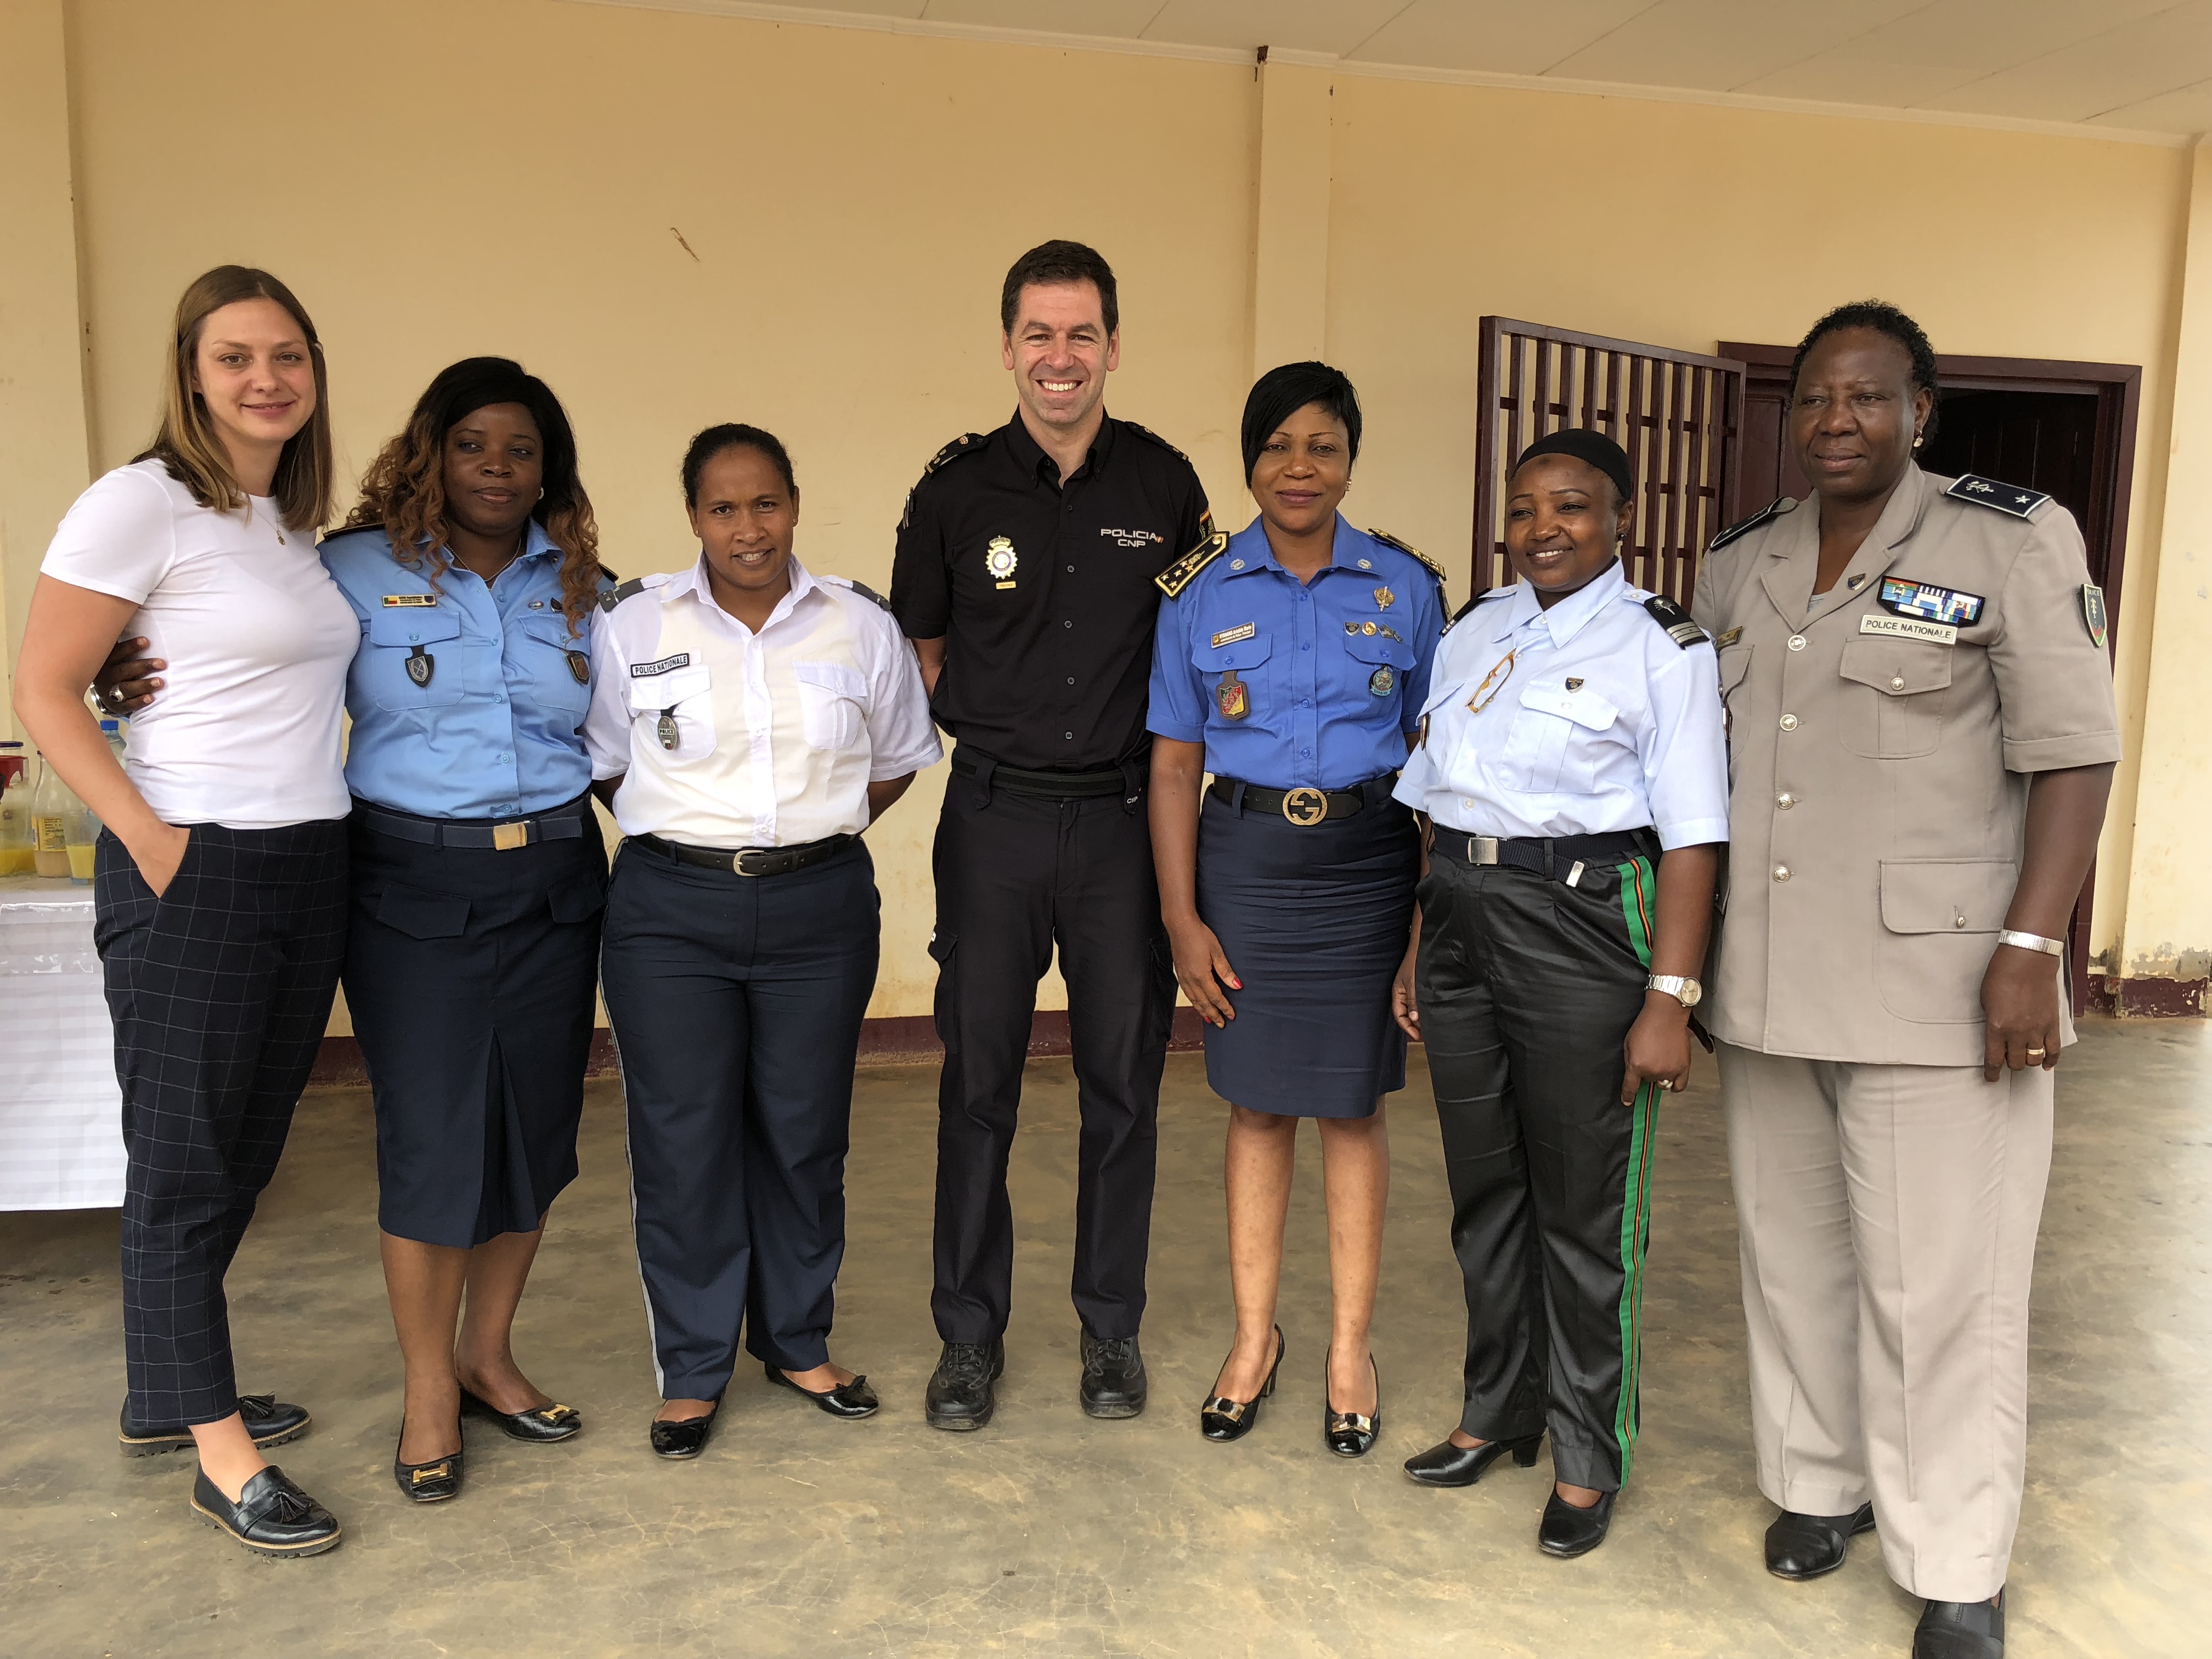 Diverses dones policia de països estrangers al costat d'un inspector de Policia Nacional.